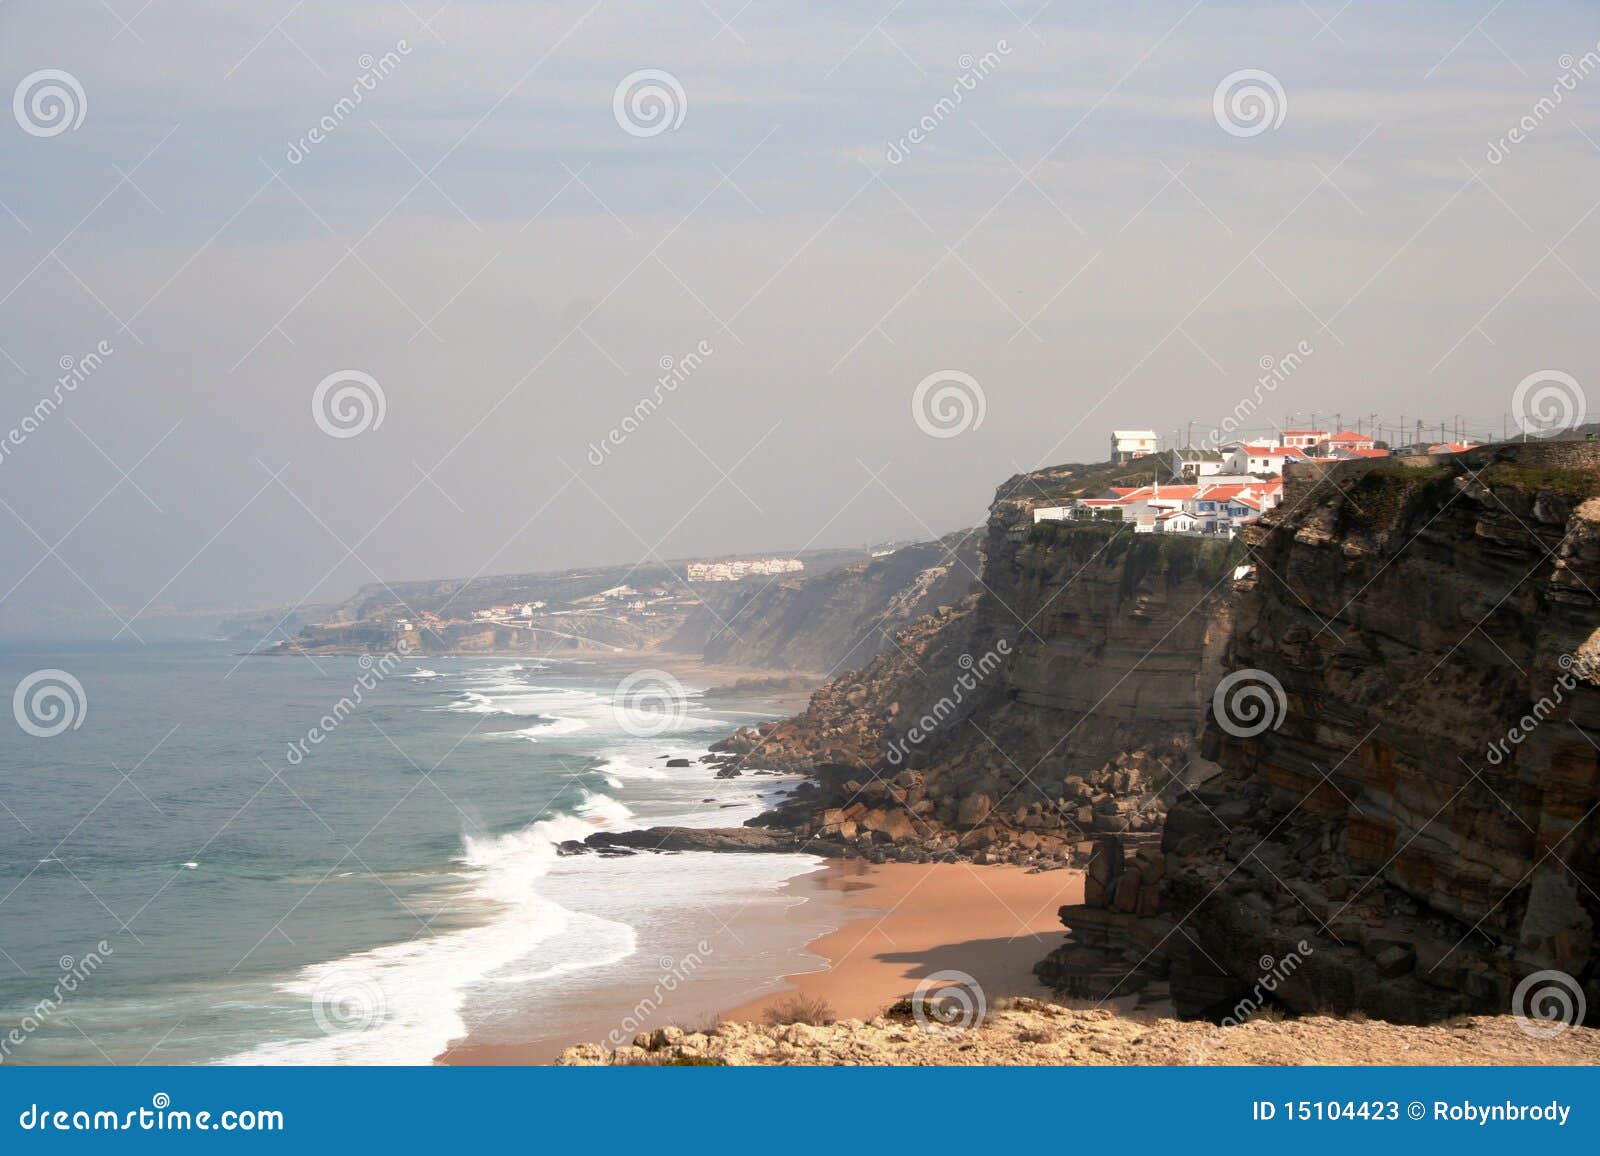 azenhas do mar, portugal